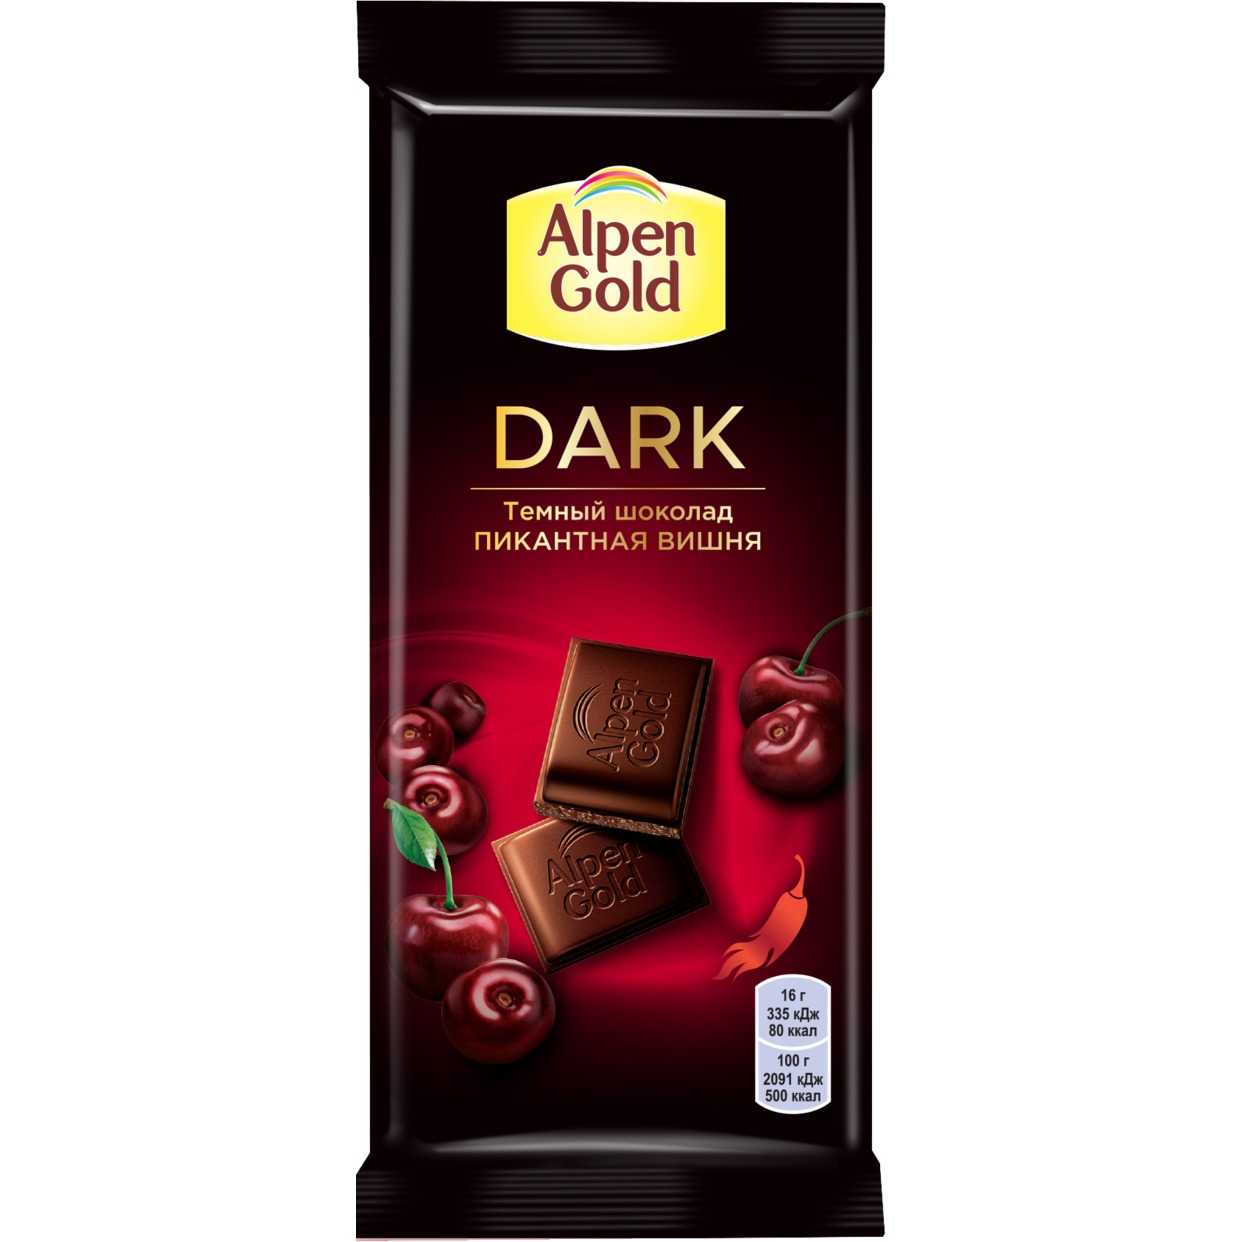 Шоколад темный Alpen Gold Альпен Гольд Пикантная Вишня с вишневыми кусочками со вкусом перца чили, 80г по акции в Пятерочке